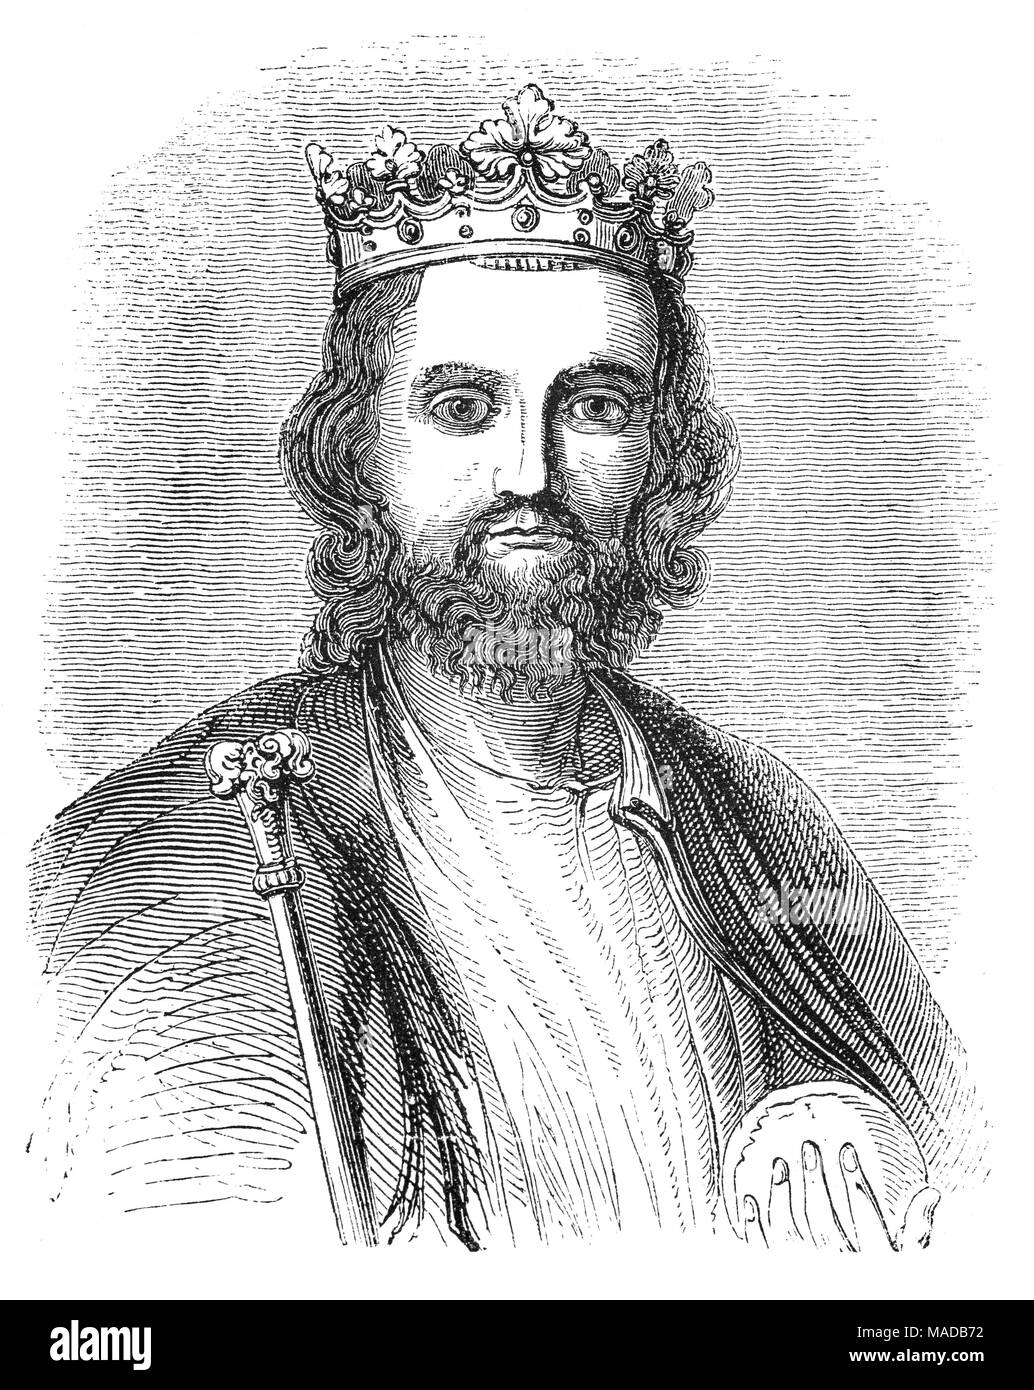 Il re Edoardo II (1284 - 1327), Aka Edward di Carnarvon, sono stato re d'Inghilterra dal 1307 fino al deposto nel gennaio 1327. Il quarto figlio di Edoardo I, Edward divenne apparente erede al trono dopo la morte di suo fratello Alphonso. A partire dal 1300, Edward ha accompagnato il suo padre sulle campagne per tranquillizzare la Scozia. Egli è riuscito al trono nel 1307, a seguito della morte di suo padre. Nel 1308 sposò Isabella di Francia, figlia del potente re Filippo IV, come parte di un lungo sforzo per risolvere le tensioni tra la lingua inglese e francese di corone. Foto Stock